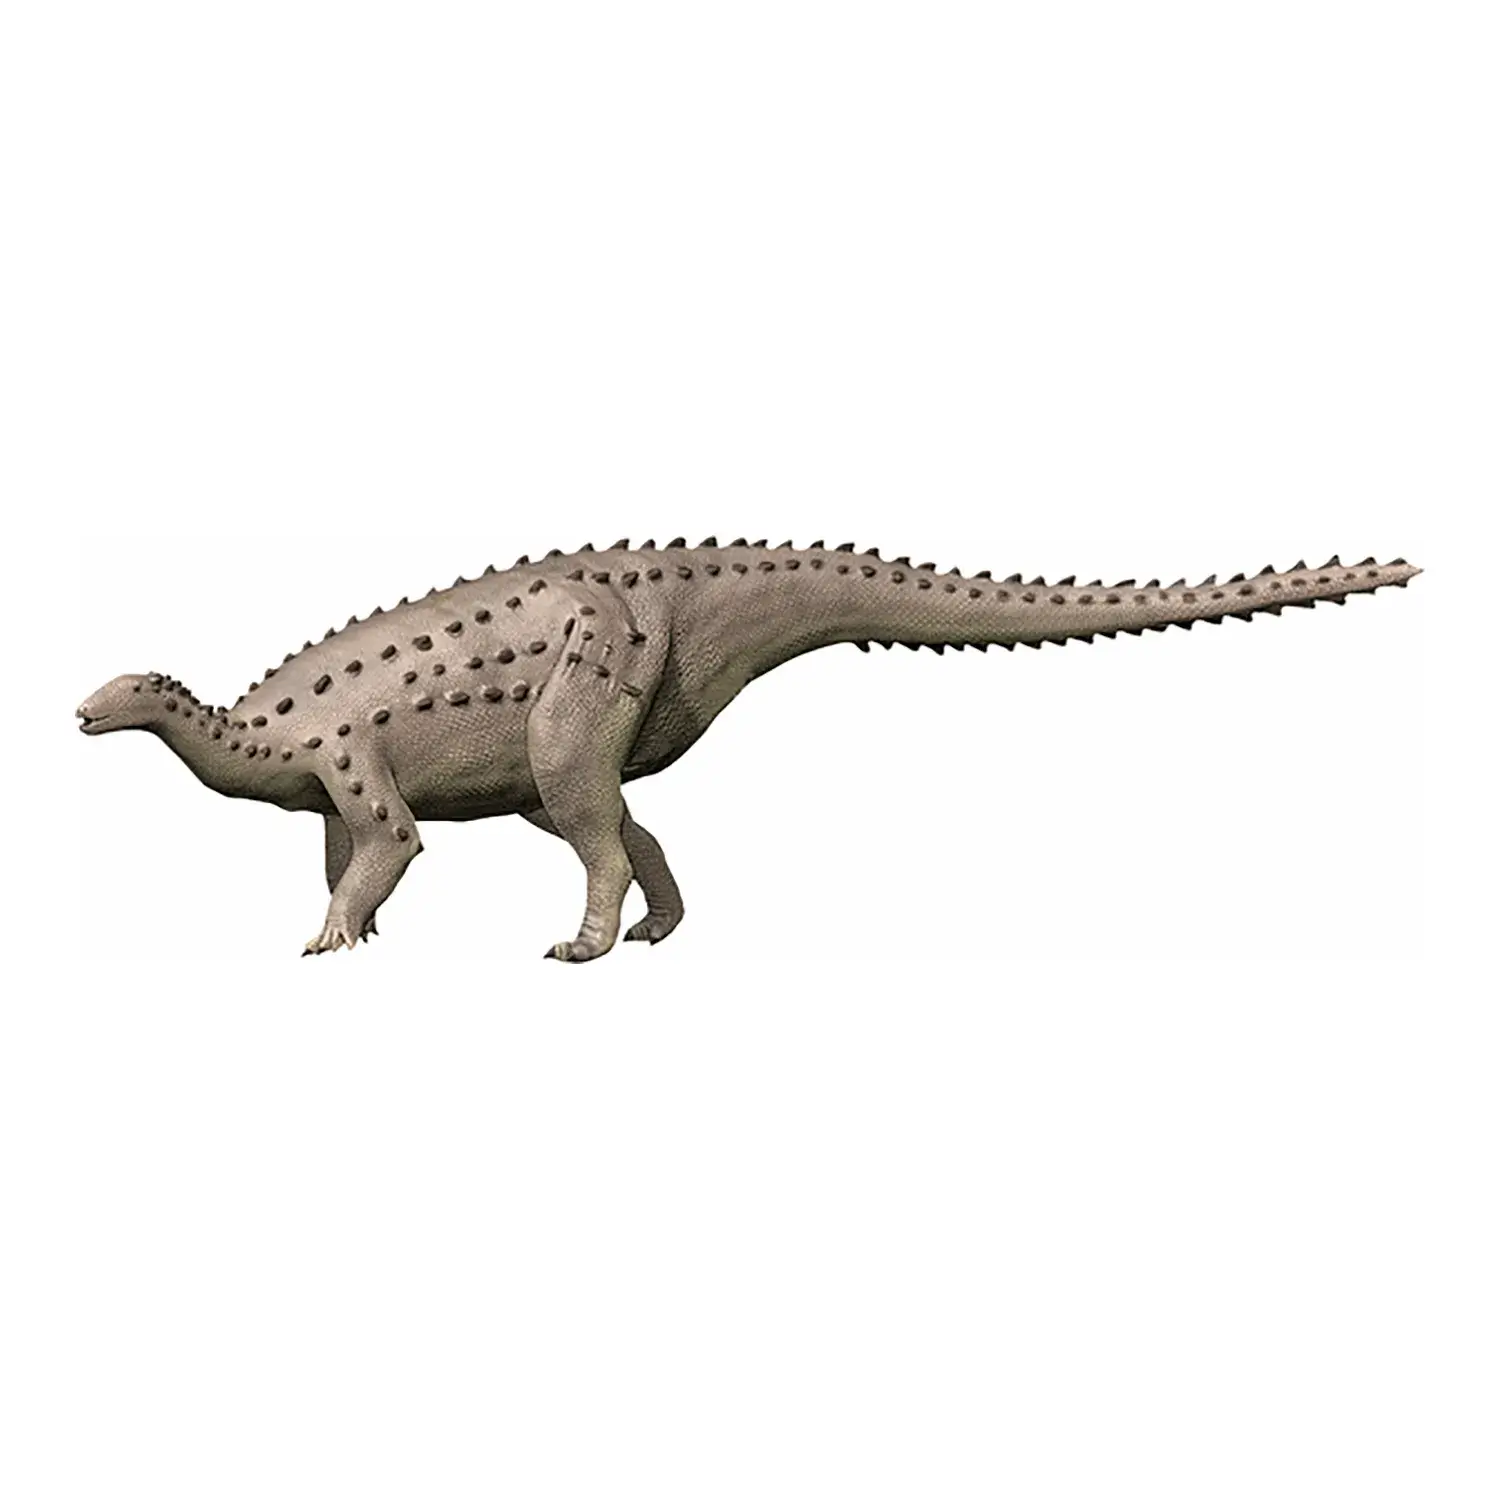 スケリドサウルス